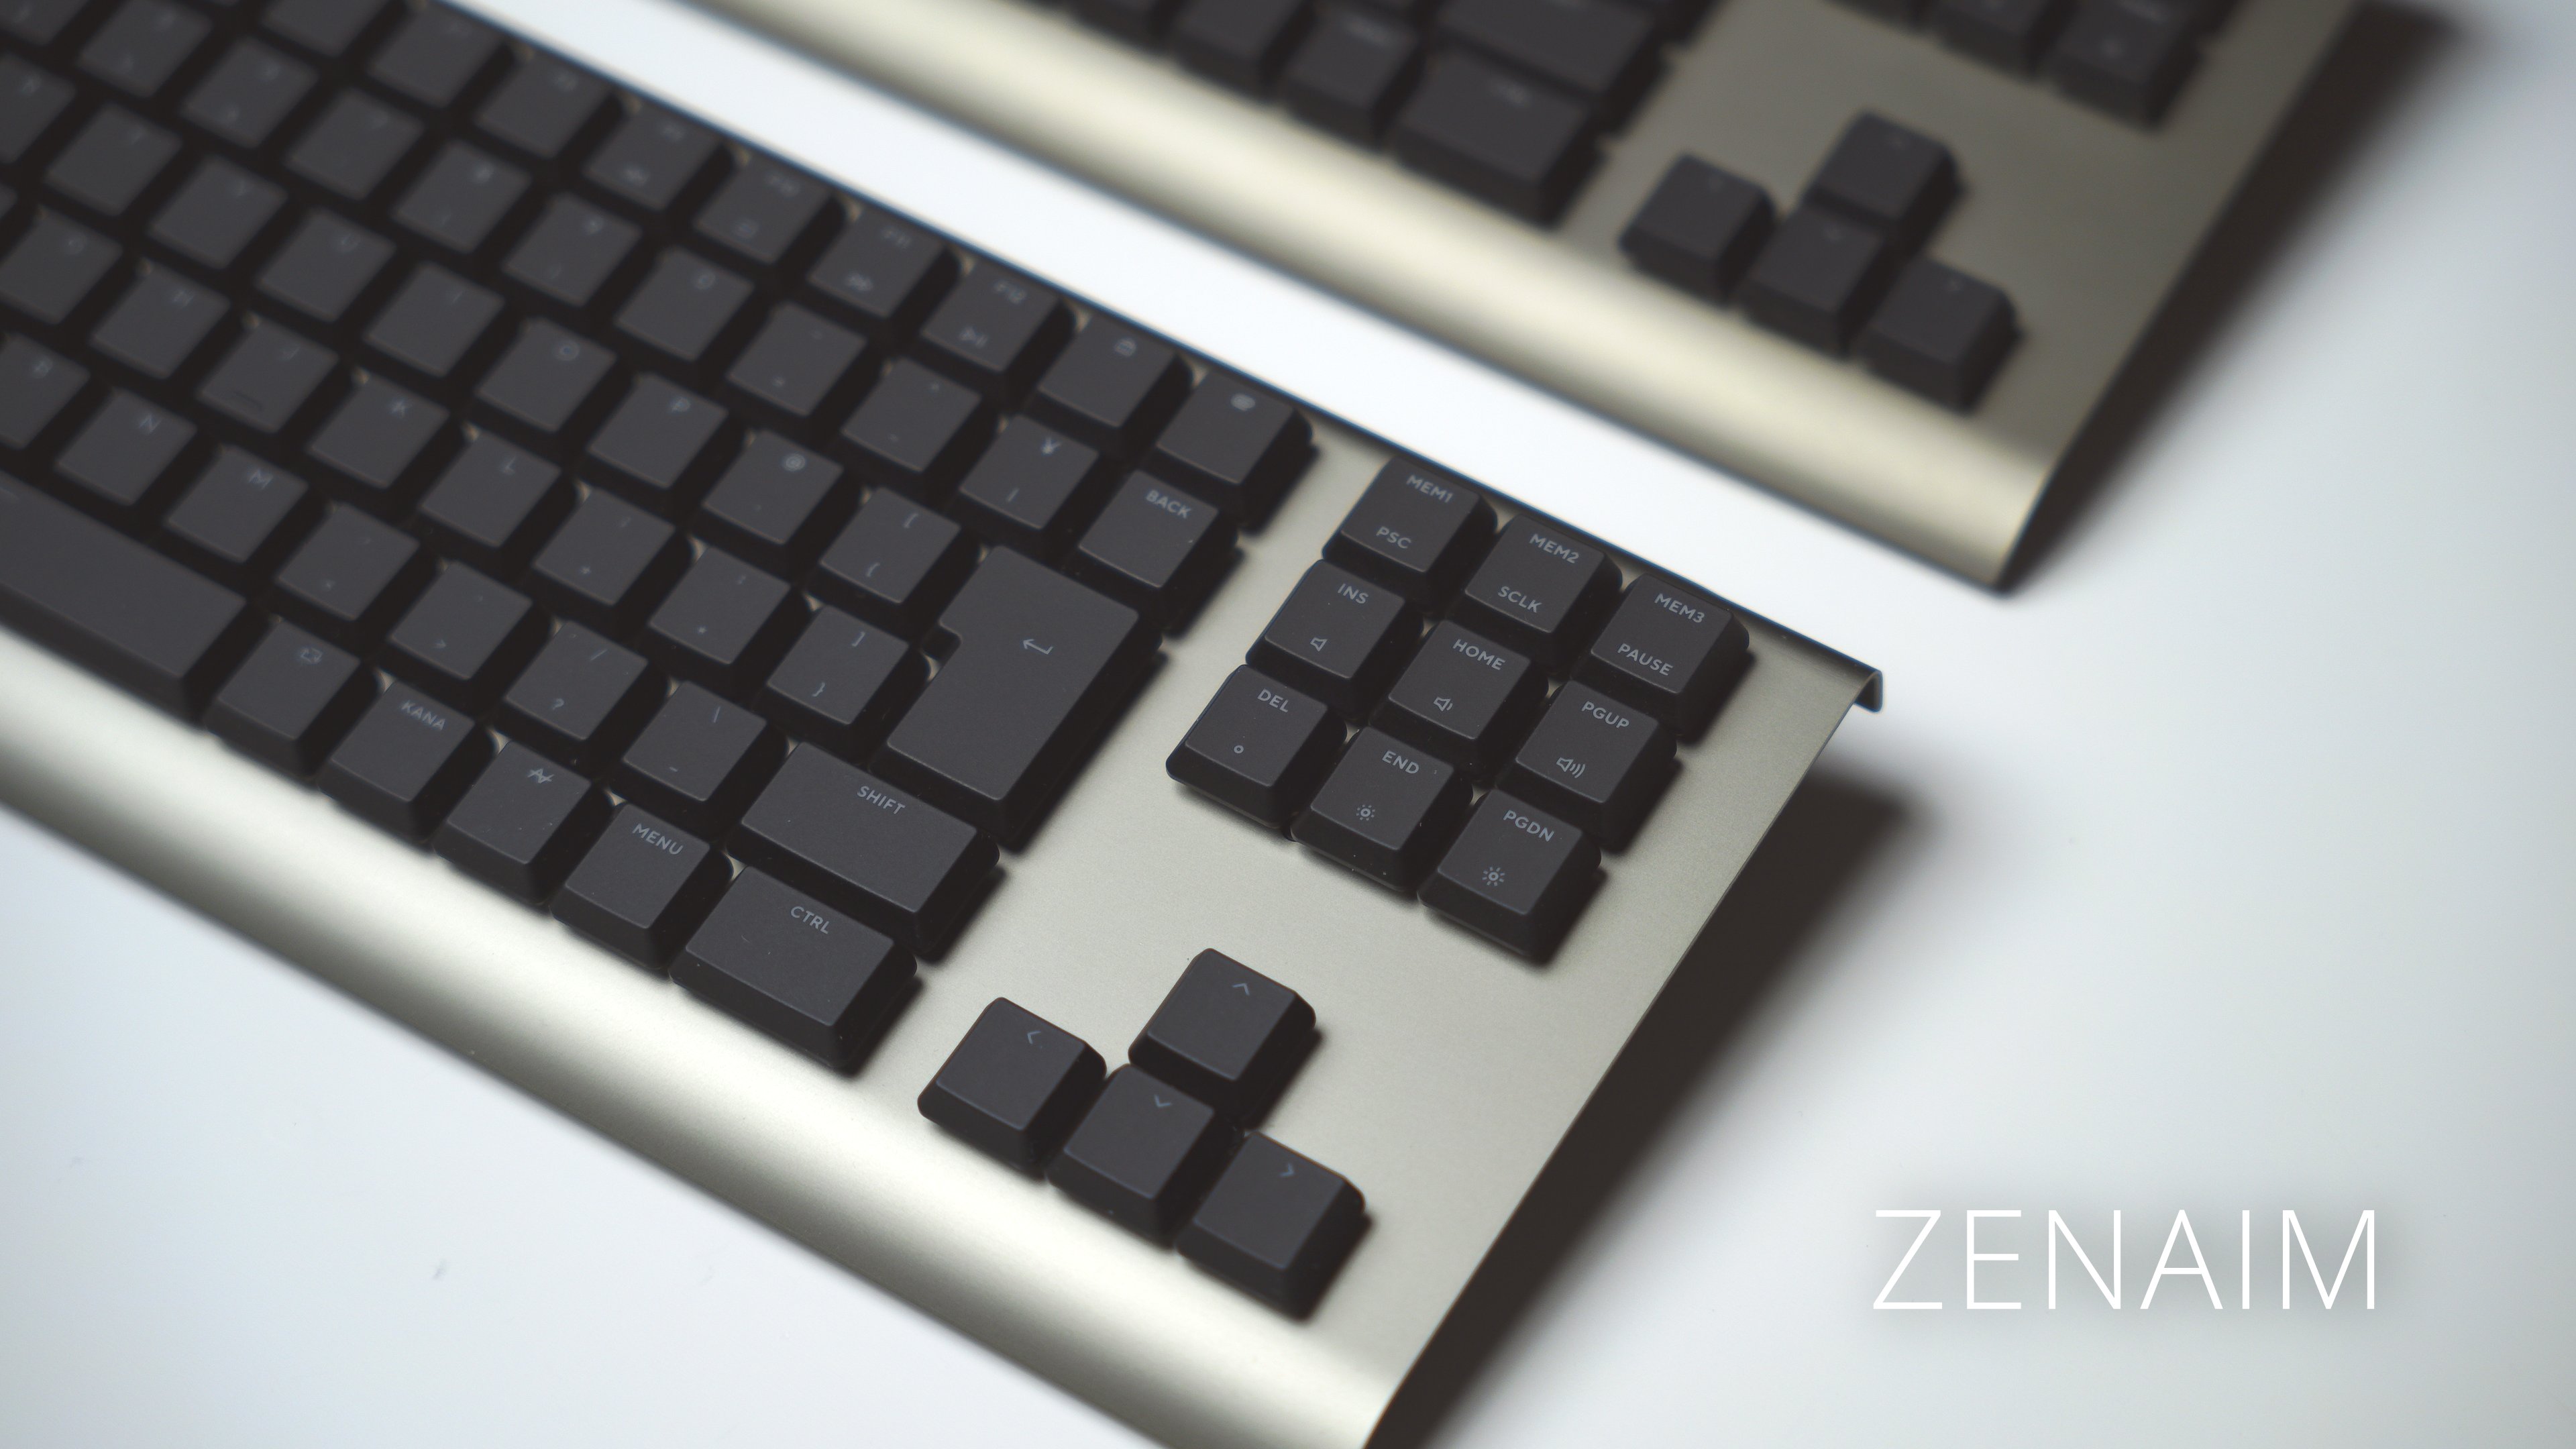 ZENAIMキーボード MOTION HACK対応ゲーミングキーボード